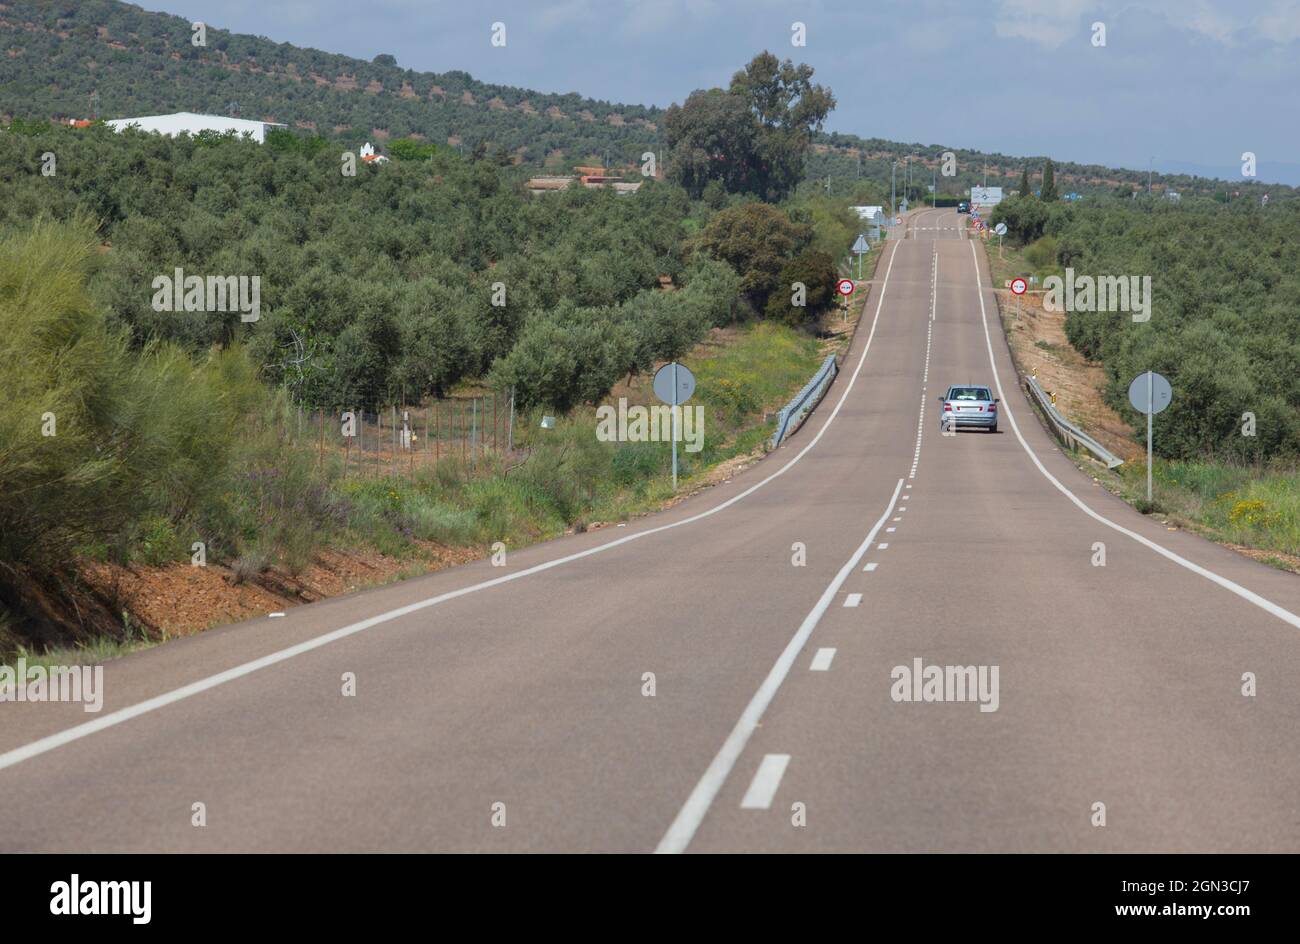 Route locale pleine de changements de pente ou de pente. Conduite le long de la Serena, Extremaduran sud-est, Espagne Banque D'Images